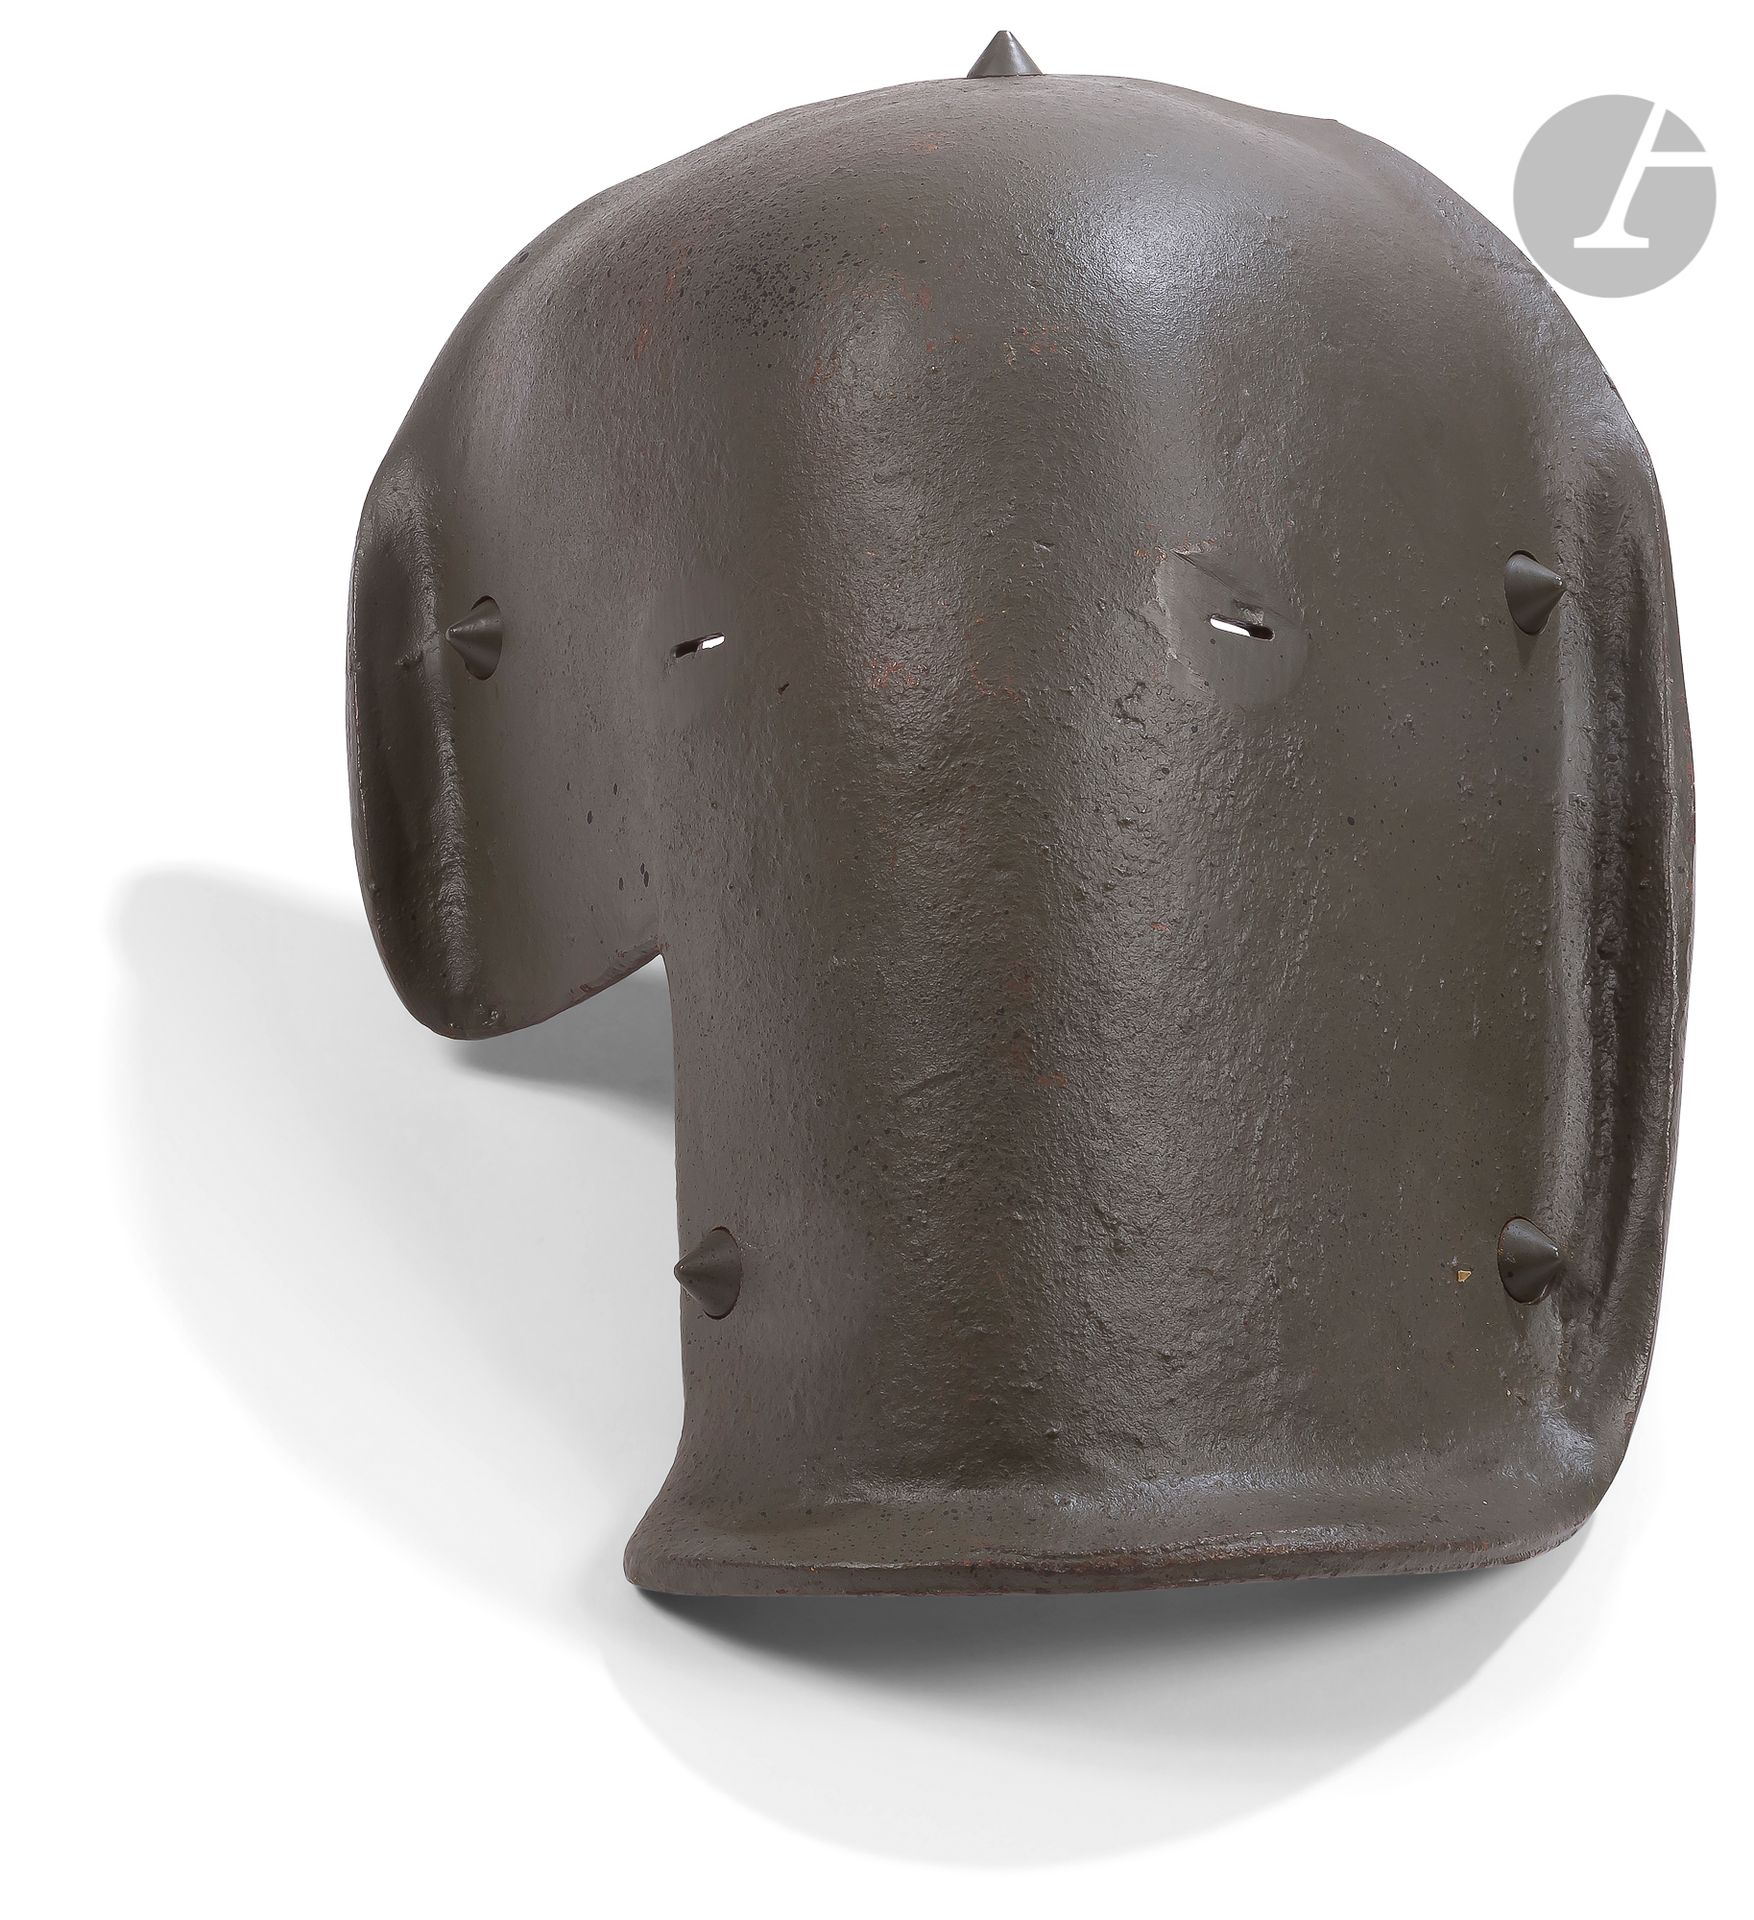 Null 罕见的德国装甲面具，称为 "大象面具"。
铁制的，重新喷漆。
A.B.E.(铆钉和扣件重做）。)挖掘片。